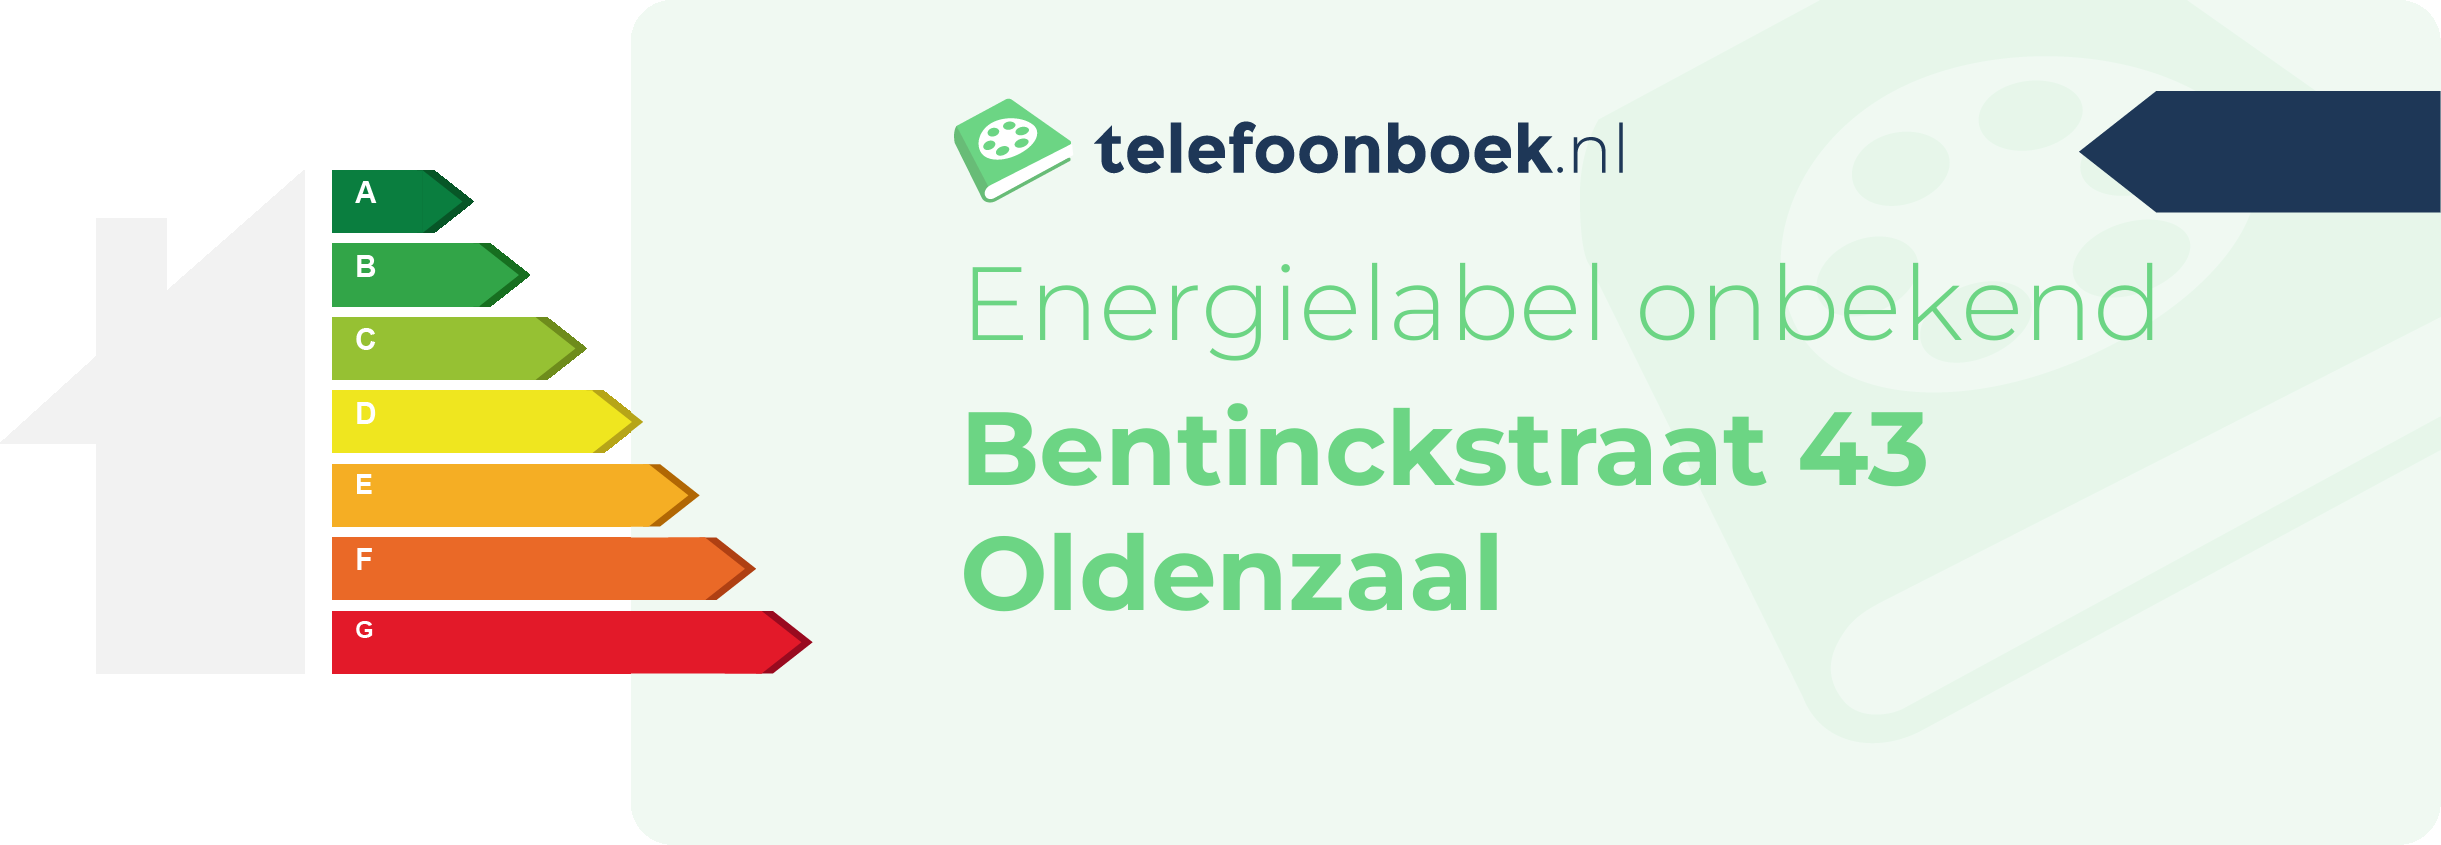 Energielabel Bentinckstraat 43 Oldenzaal